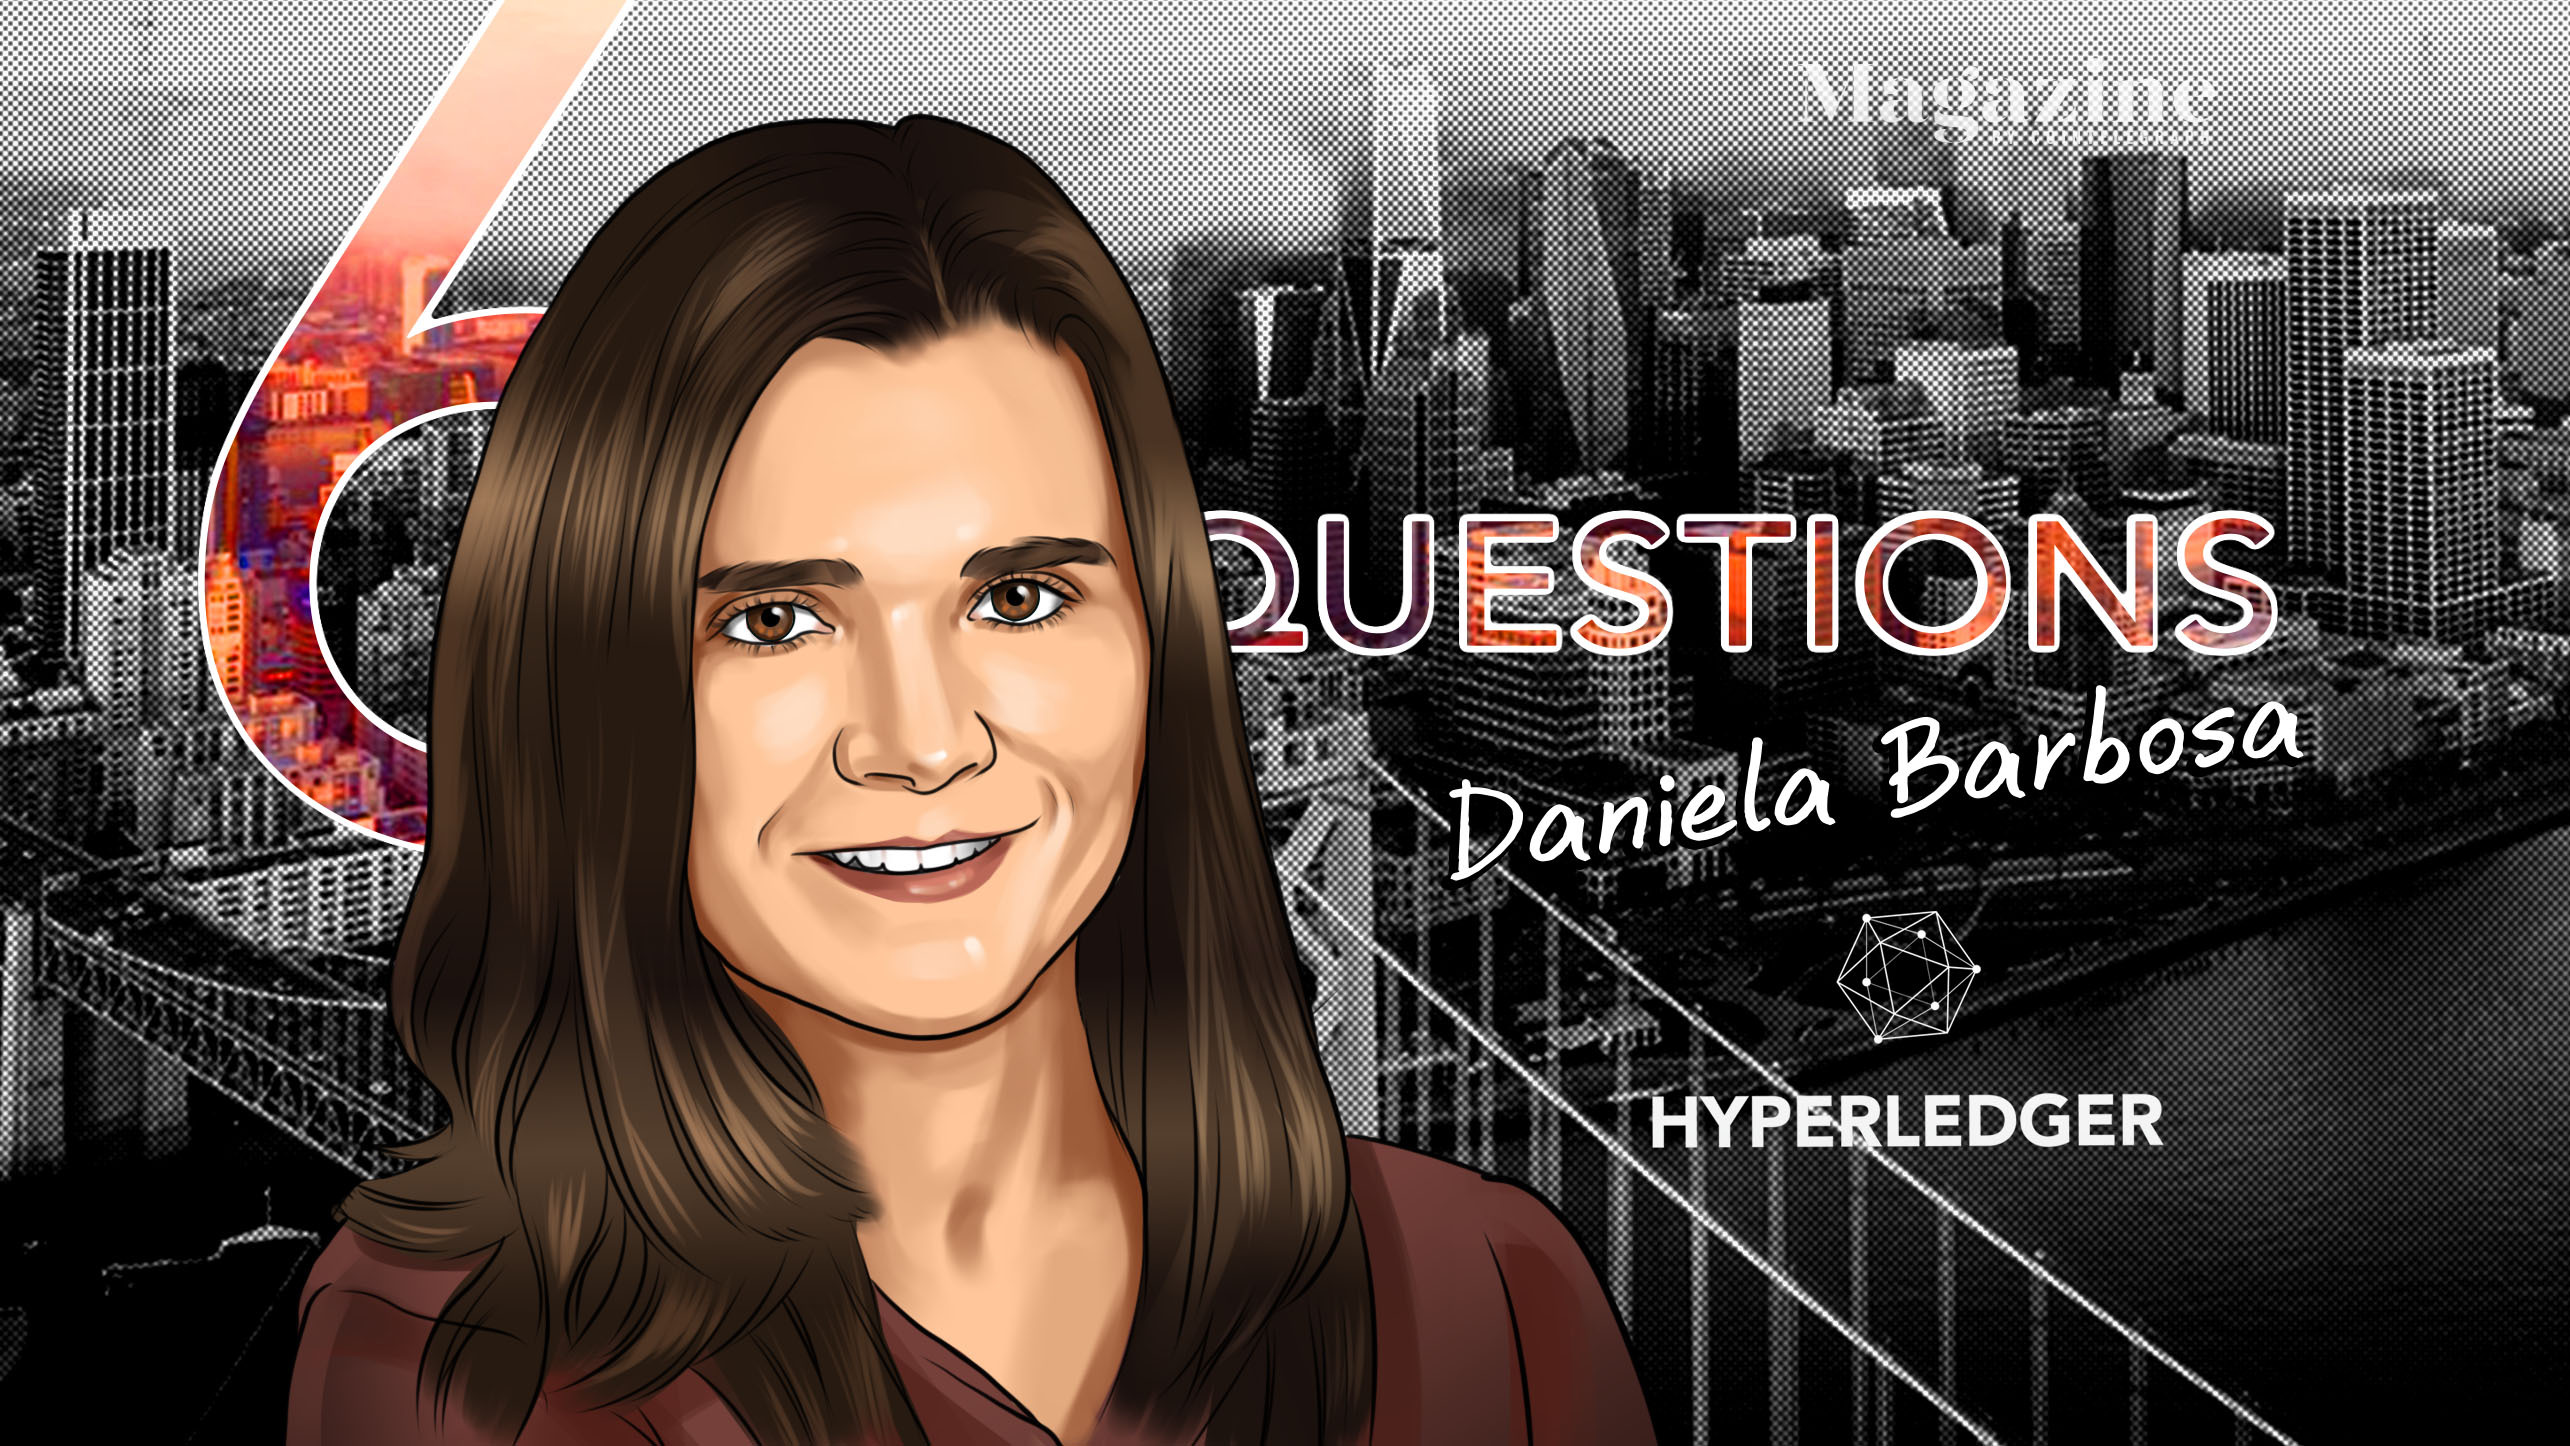 6 câu hỏi cho Daniela Barbosa của Hyperledger - Tạp chí Cointelegraph 3